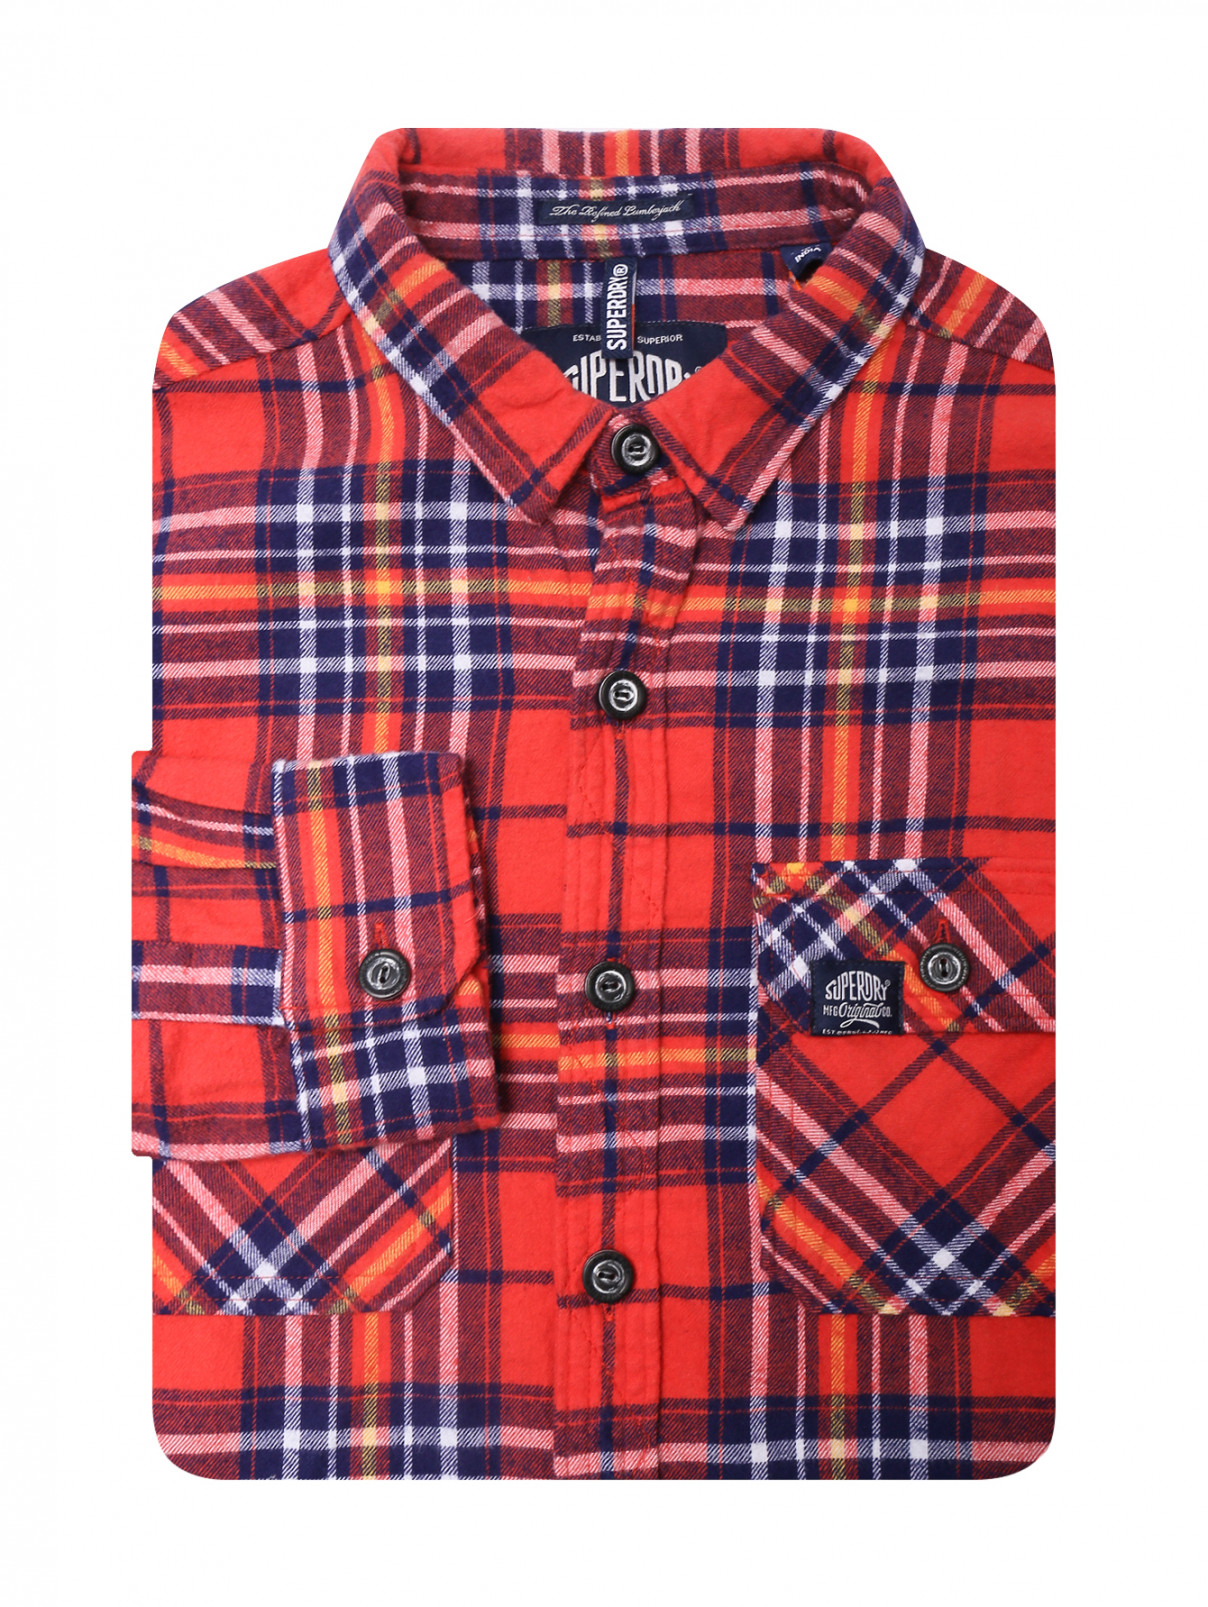 Фланелевая рубашка с узором клетка SuperDry  –  Общий вид  – Цвет:  Красный